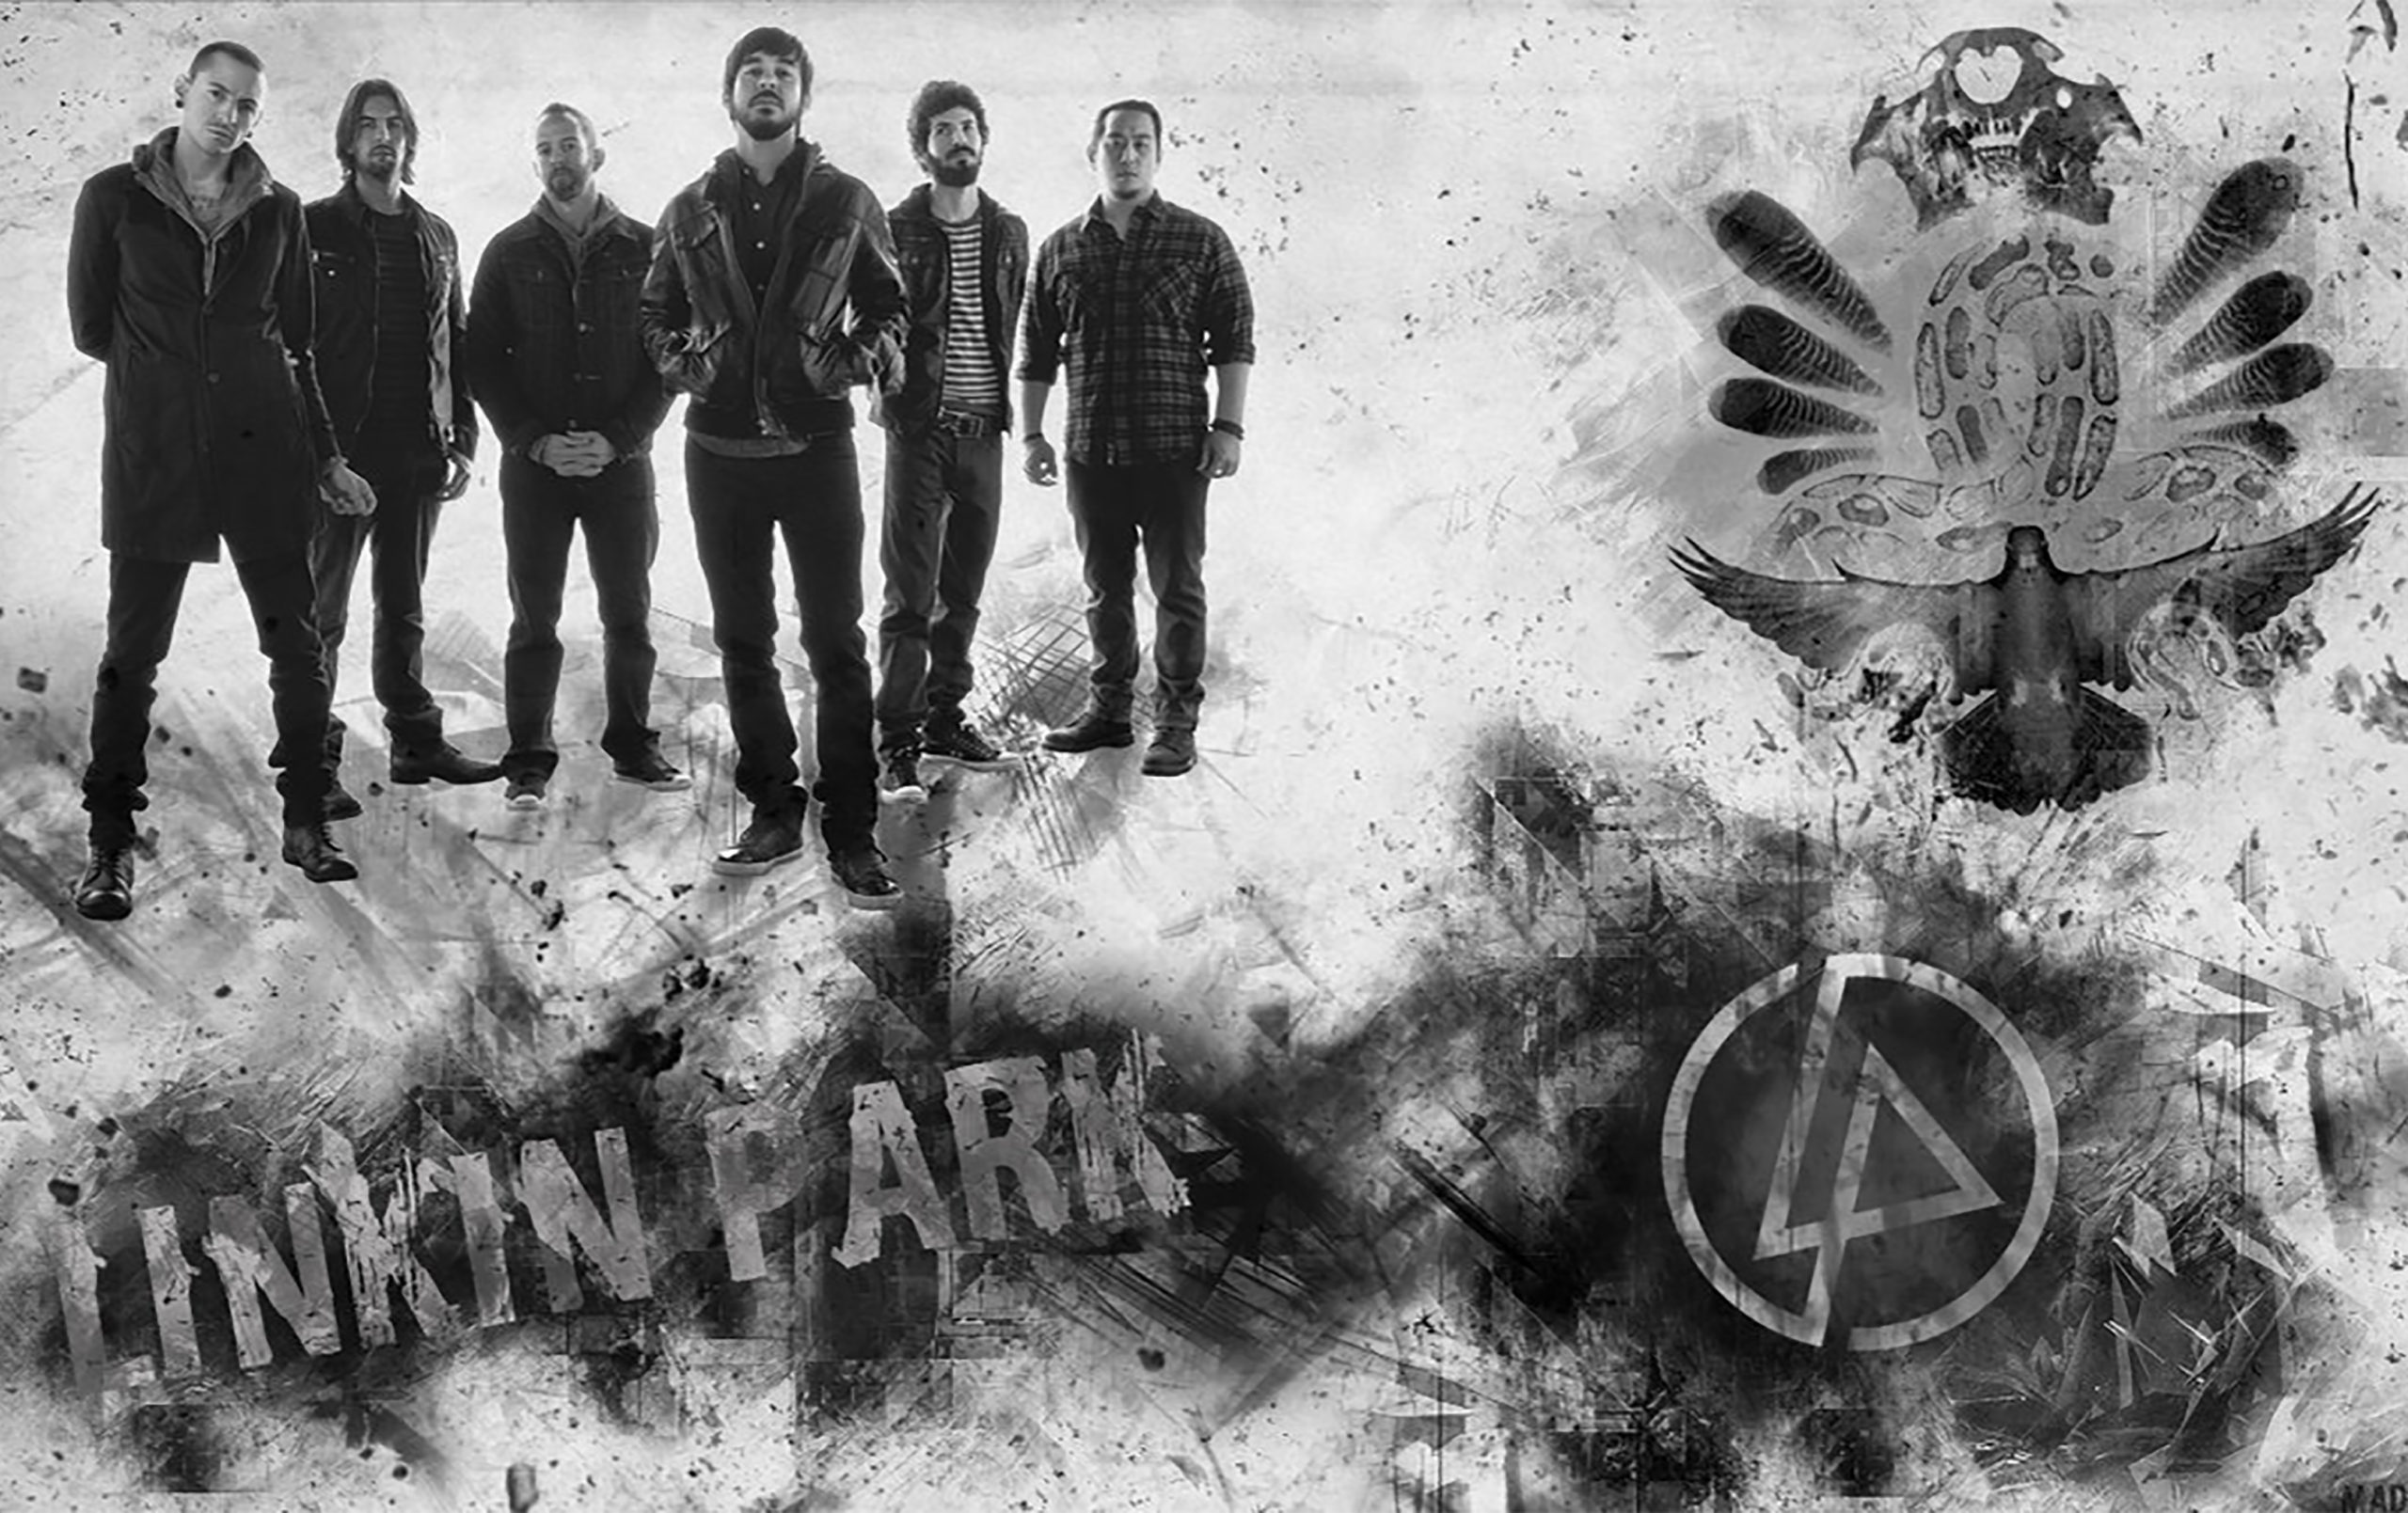 Песни линкин парк на русском. Linkin Park. Группа Linkin Park. Линкин парк состав группы. Фон линкин парк.